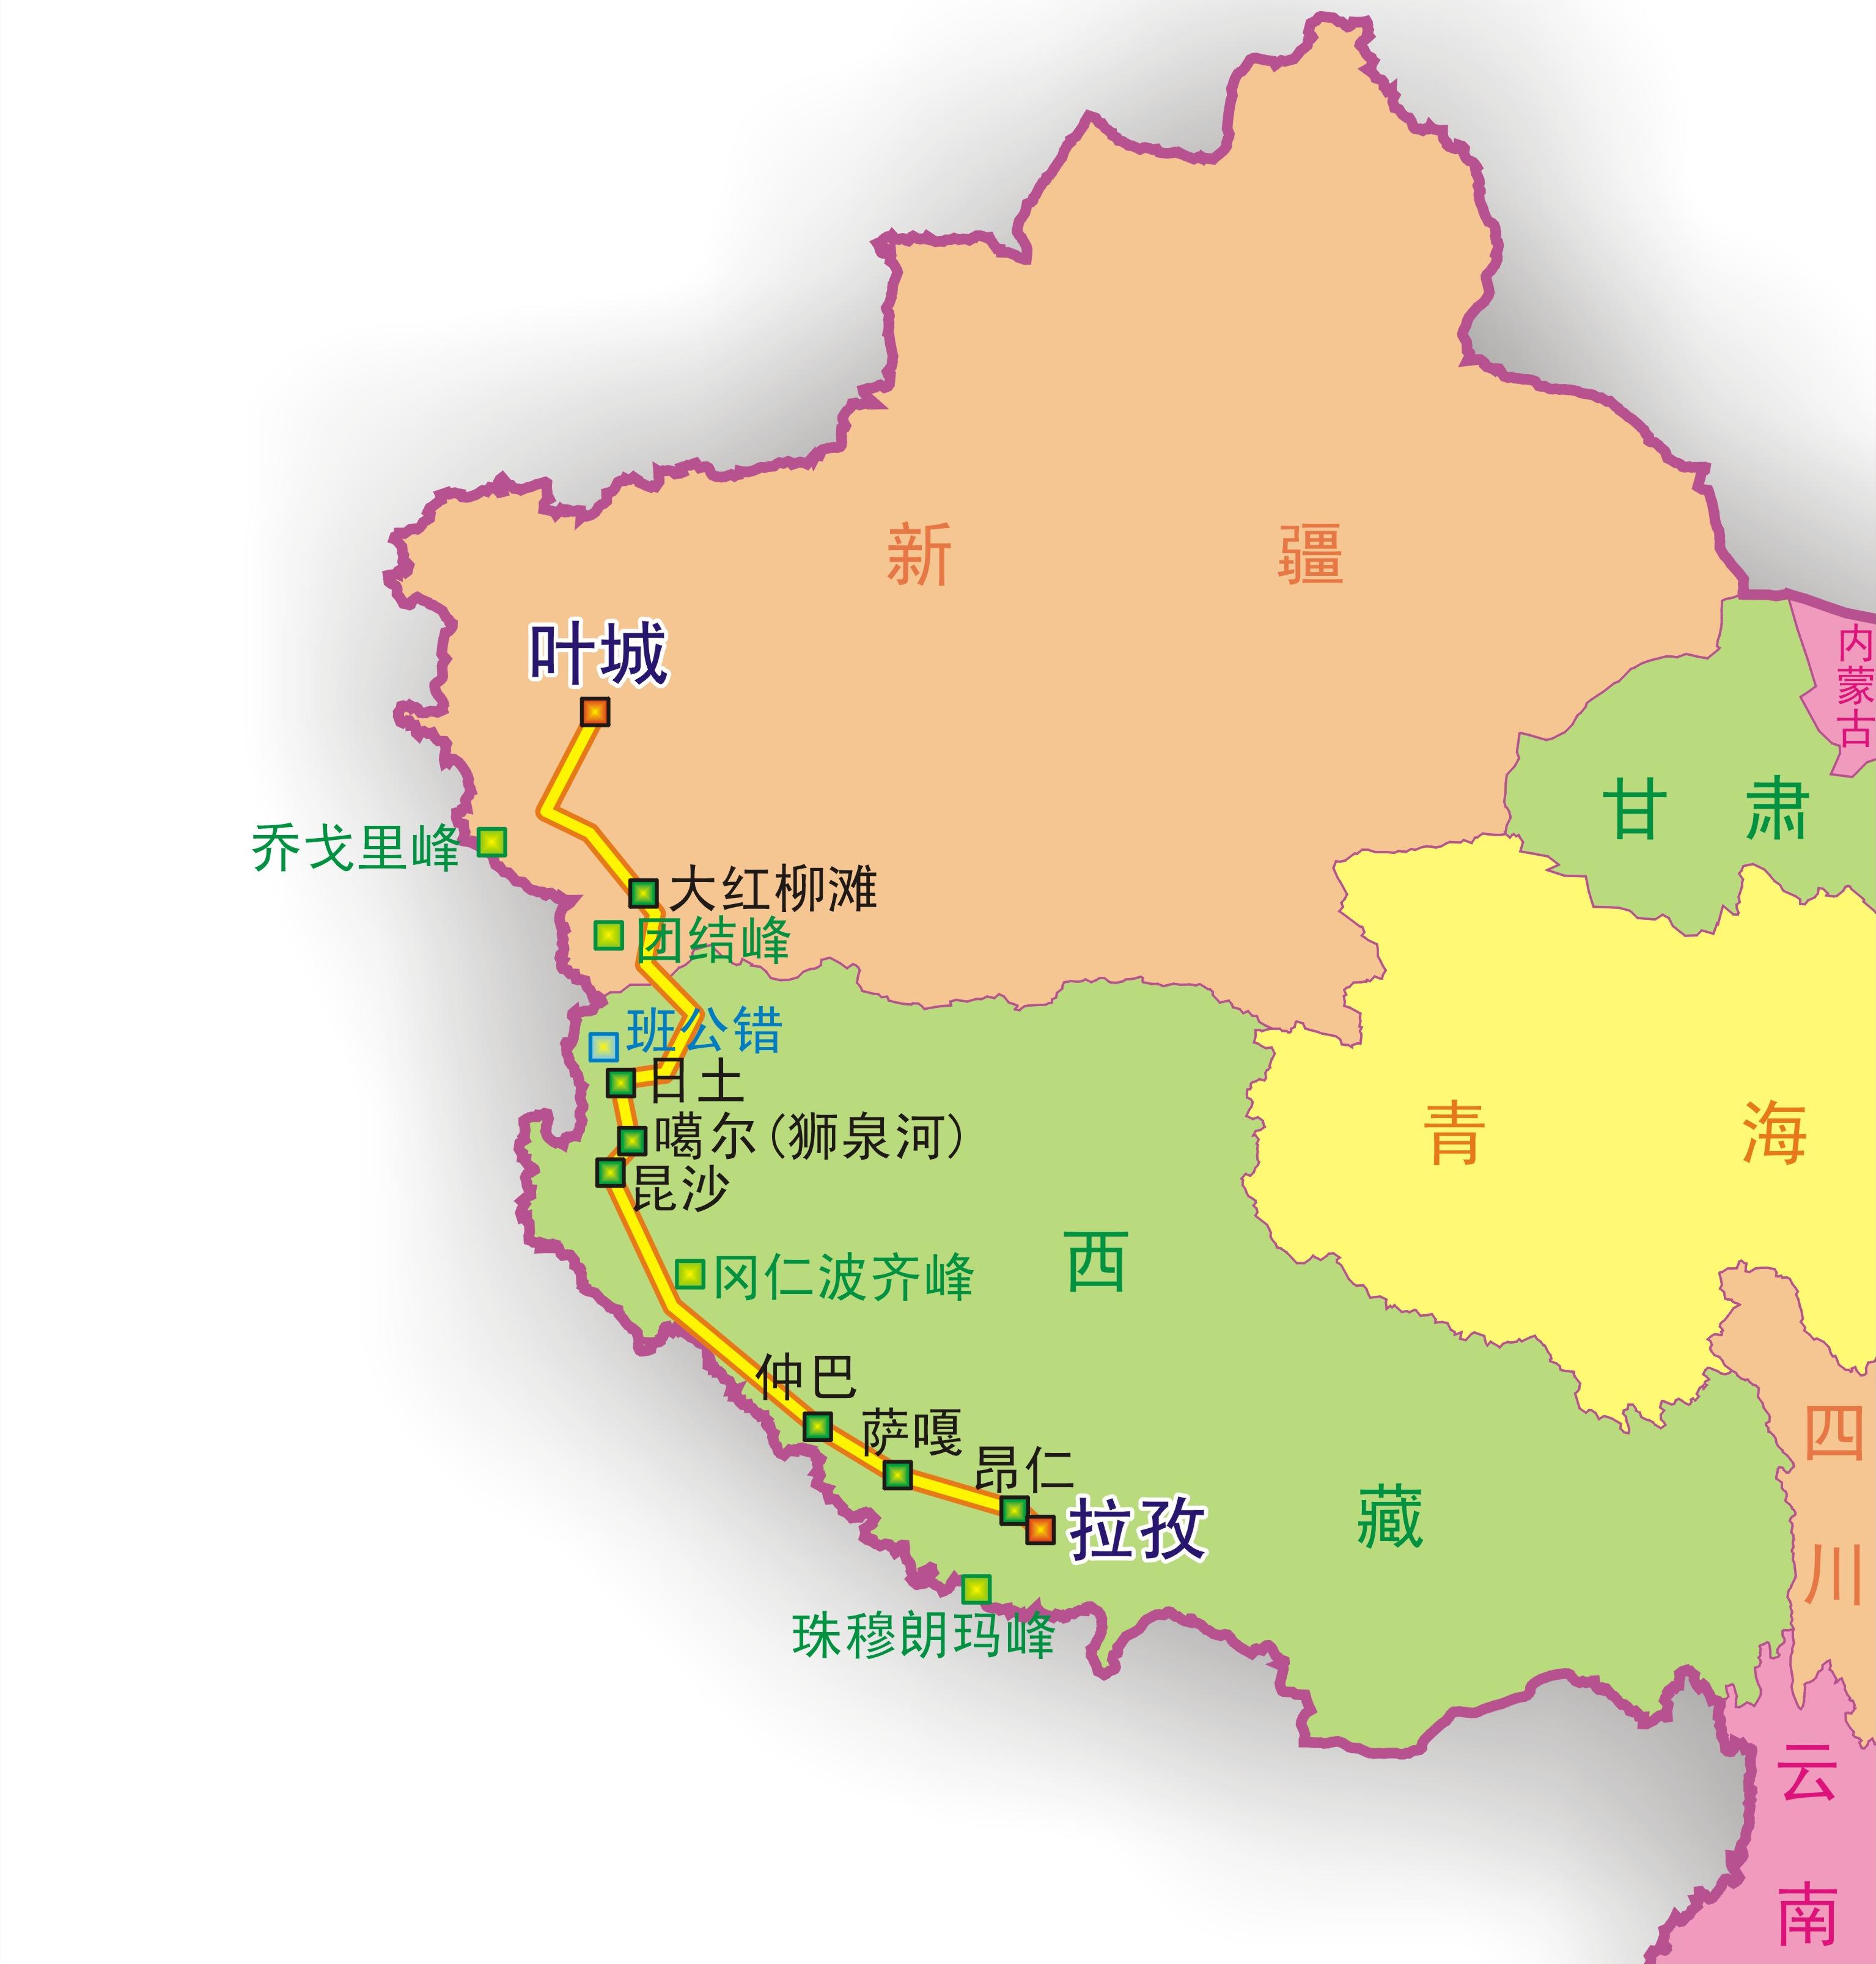 219国道(新藏线)概况